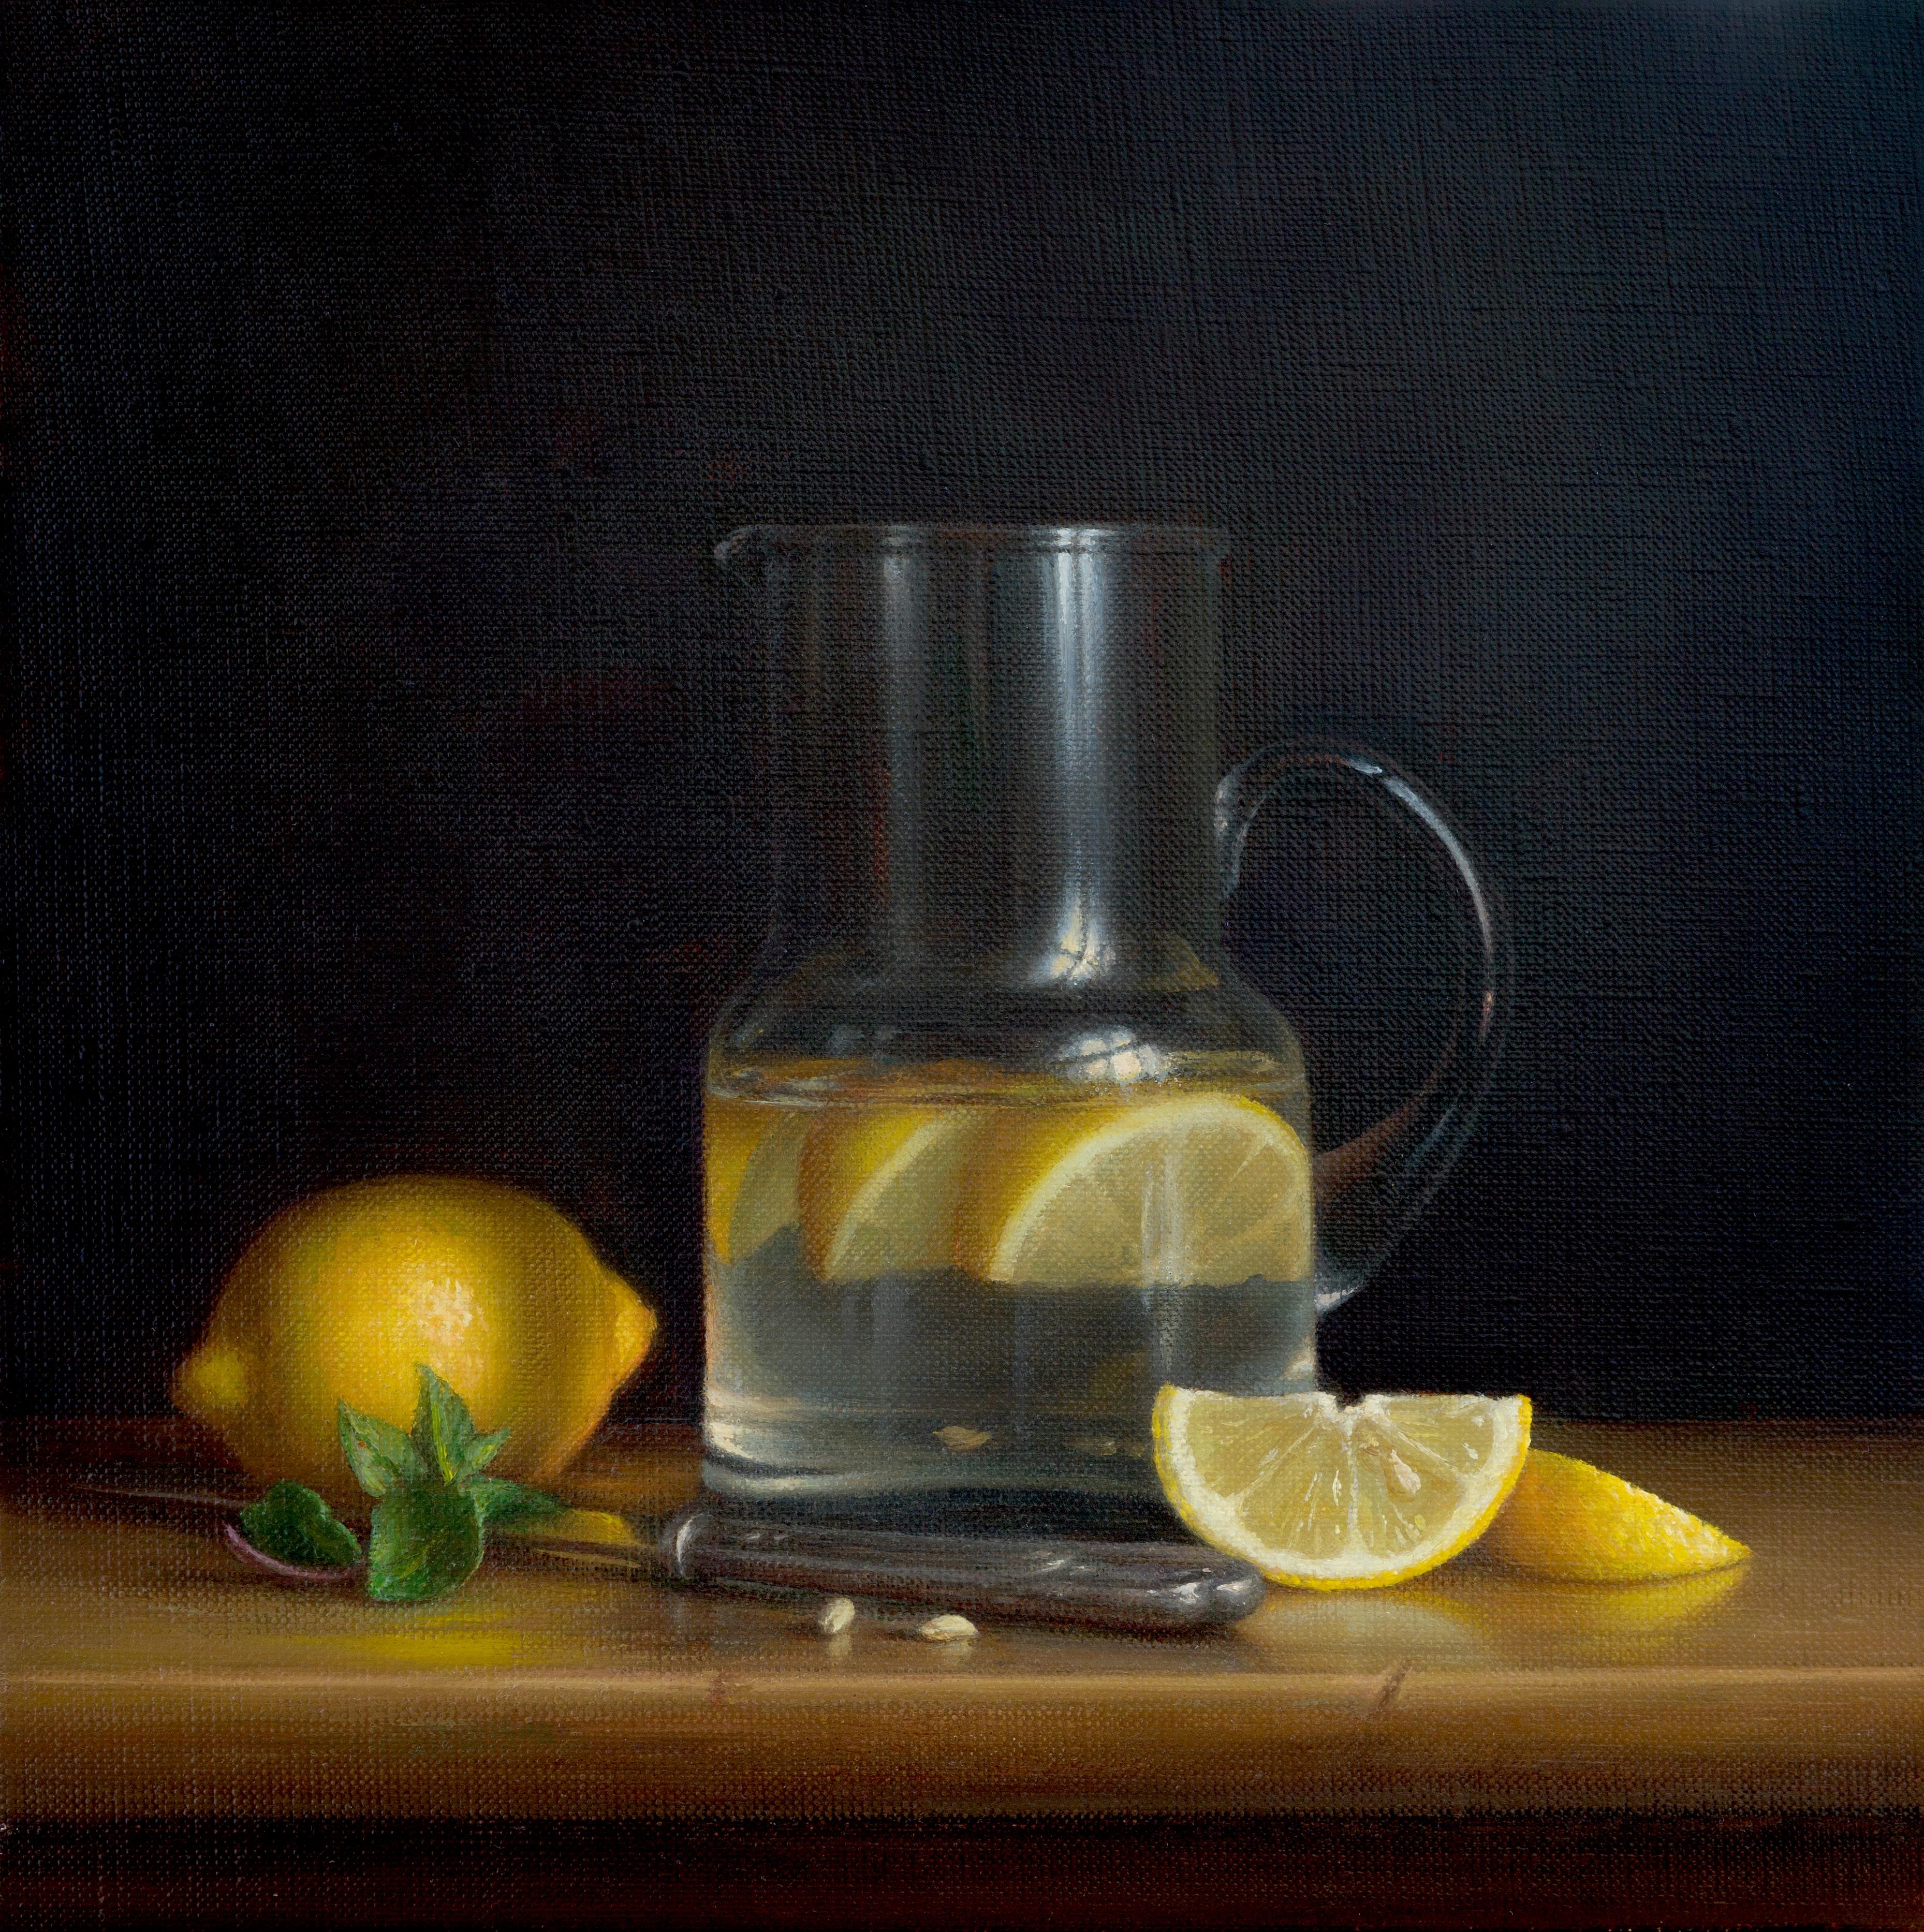  Aquarelle citron originale réalisme moderne - peinture à l'huile impressionniste